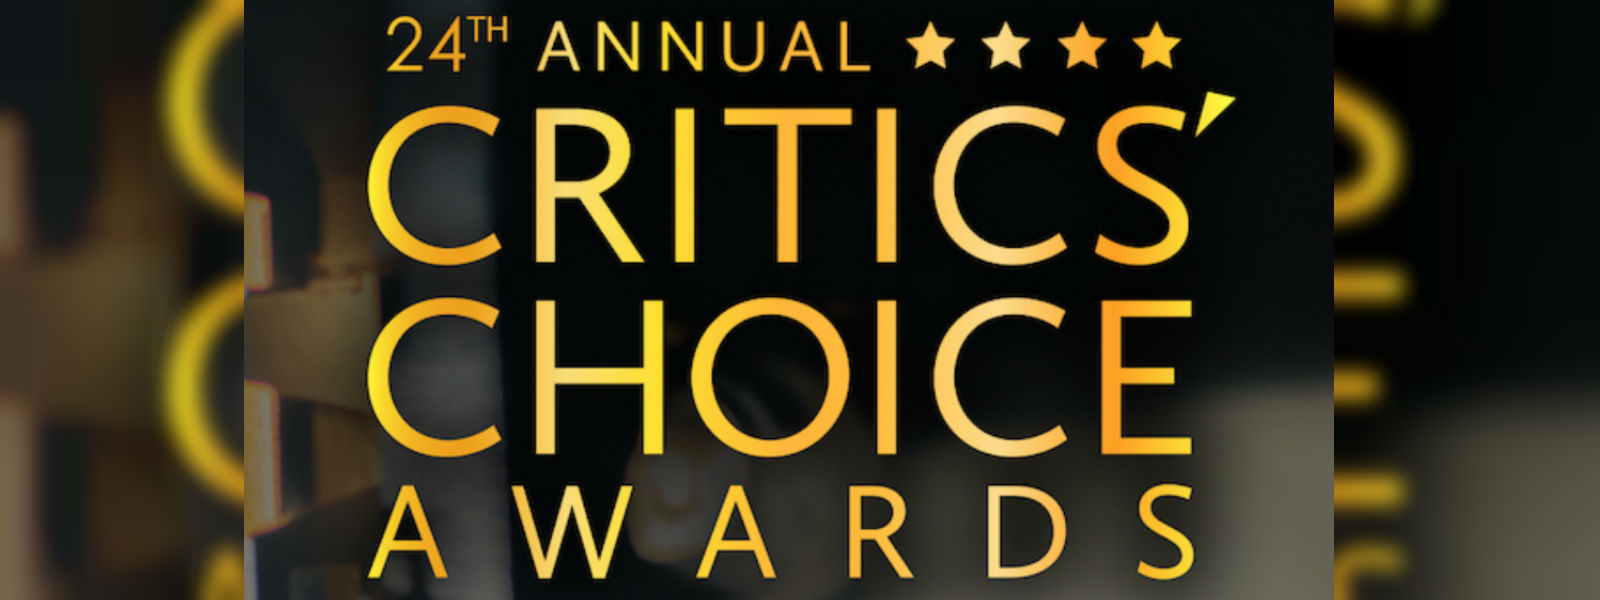 2019 Critics Choice Award winners